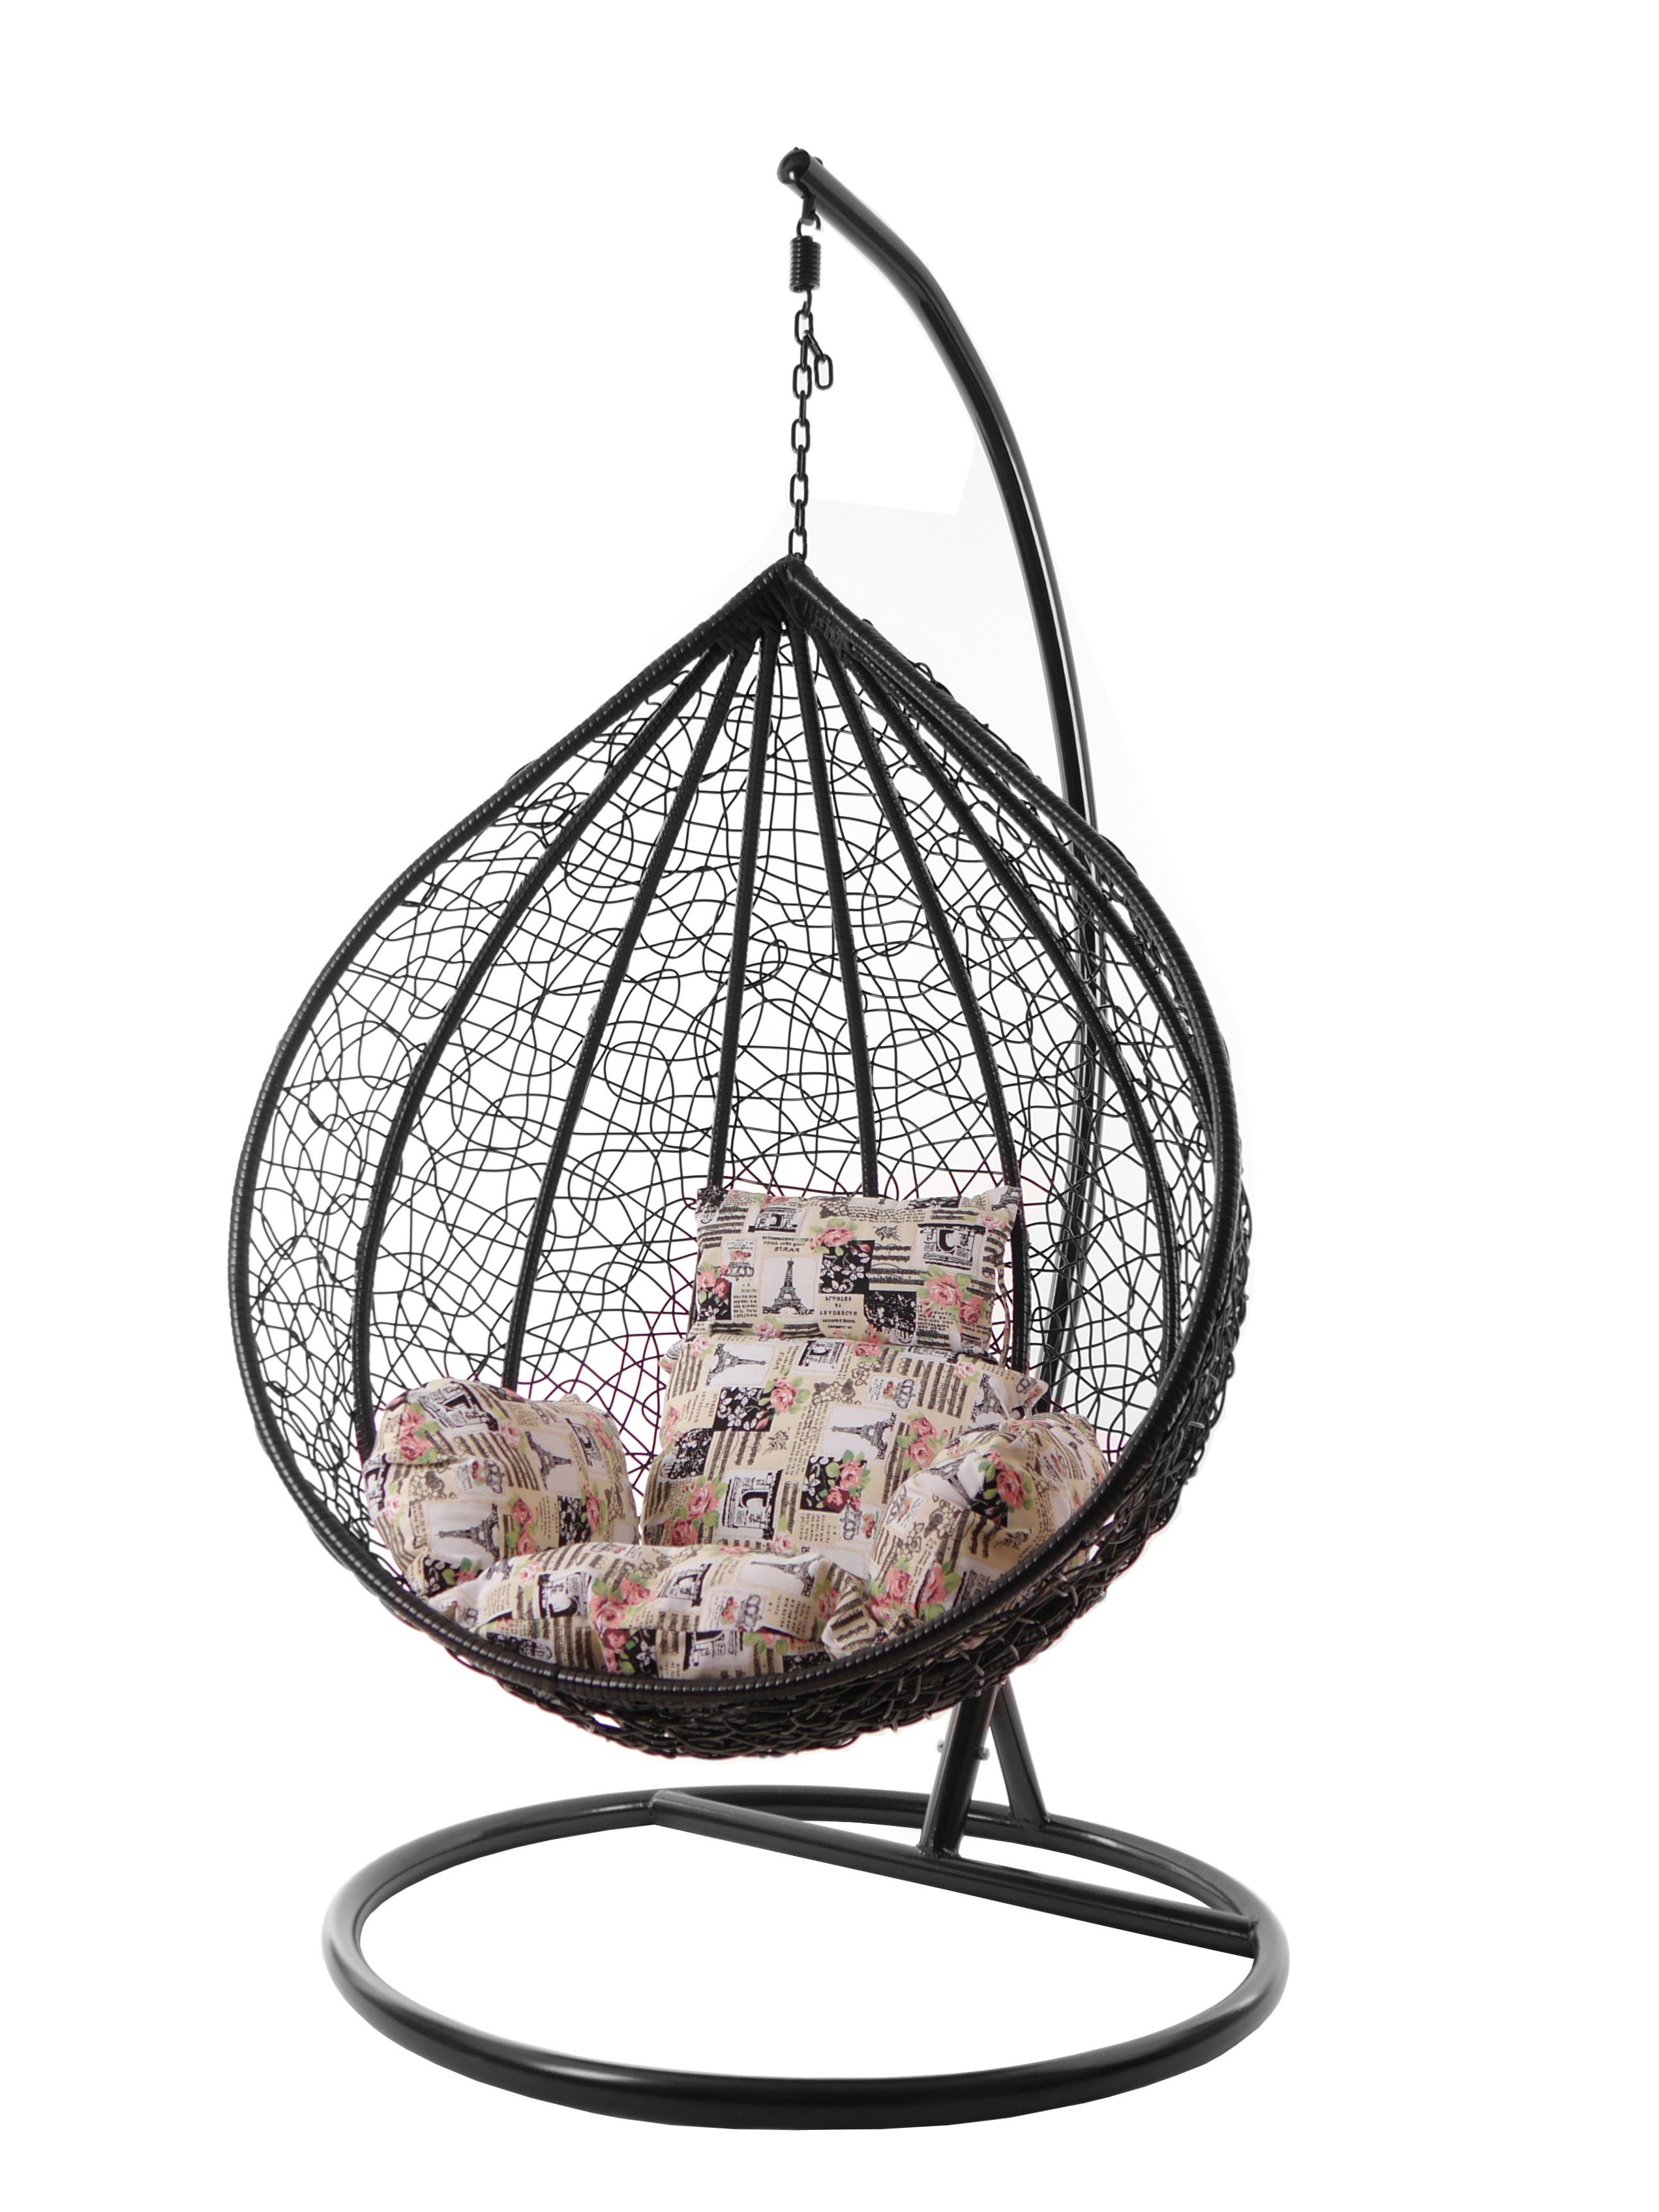 KIDEO Hängesessel Hängesessel MANACOR Chair, XXL Gestell romantisch Kissen, Hängesessel Swing Nest-Kissen schwarz, und (0930 romantic) mit